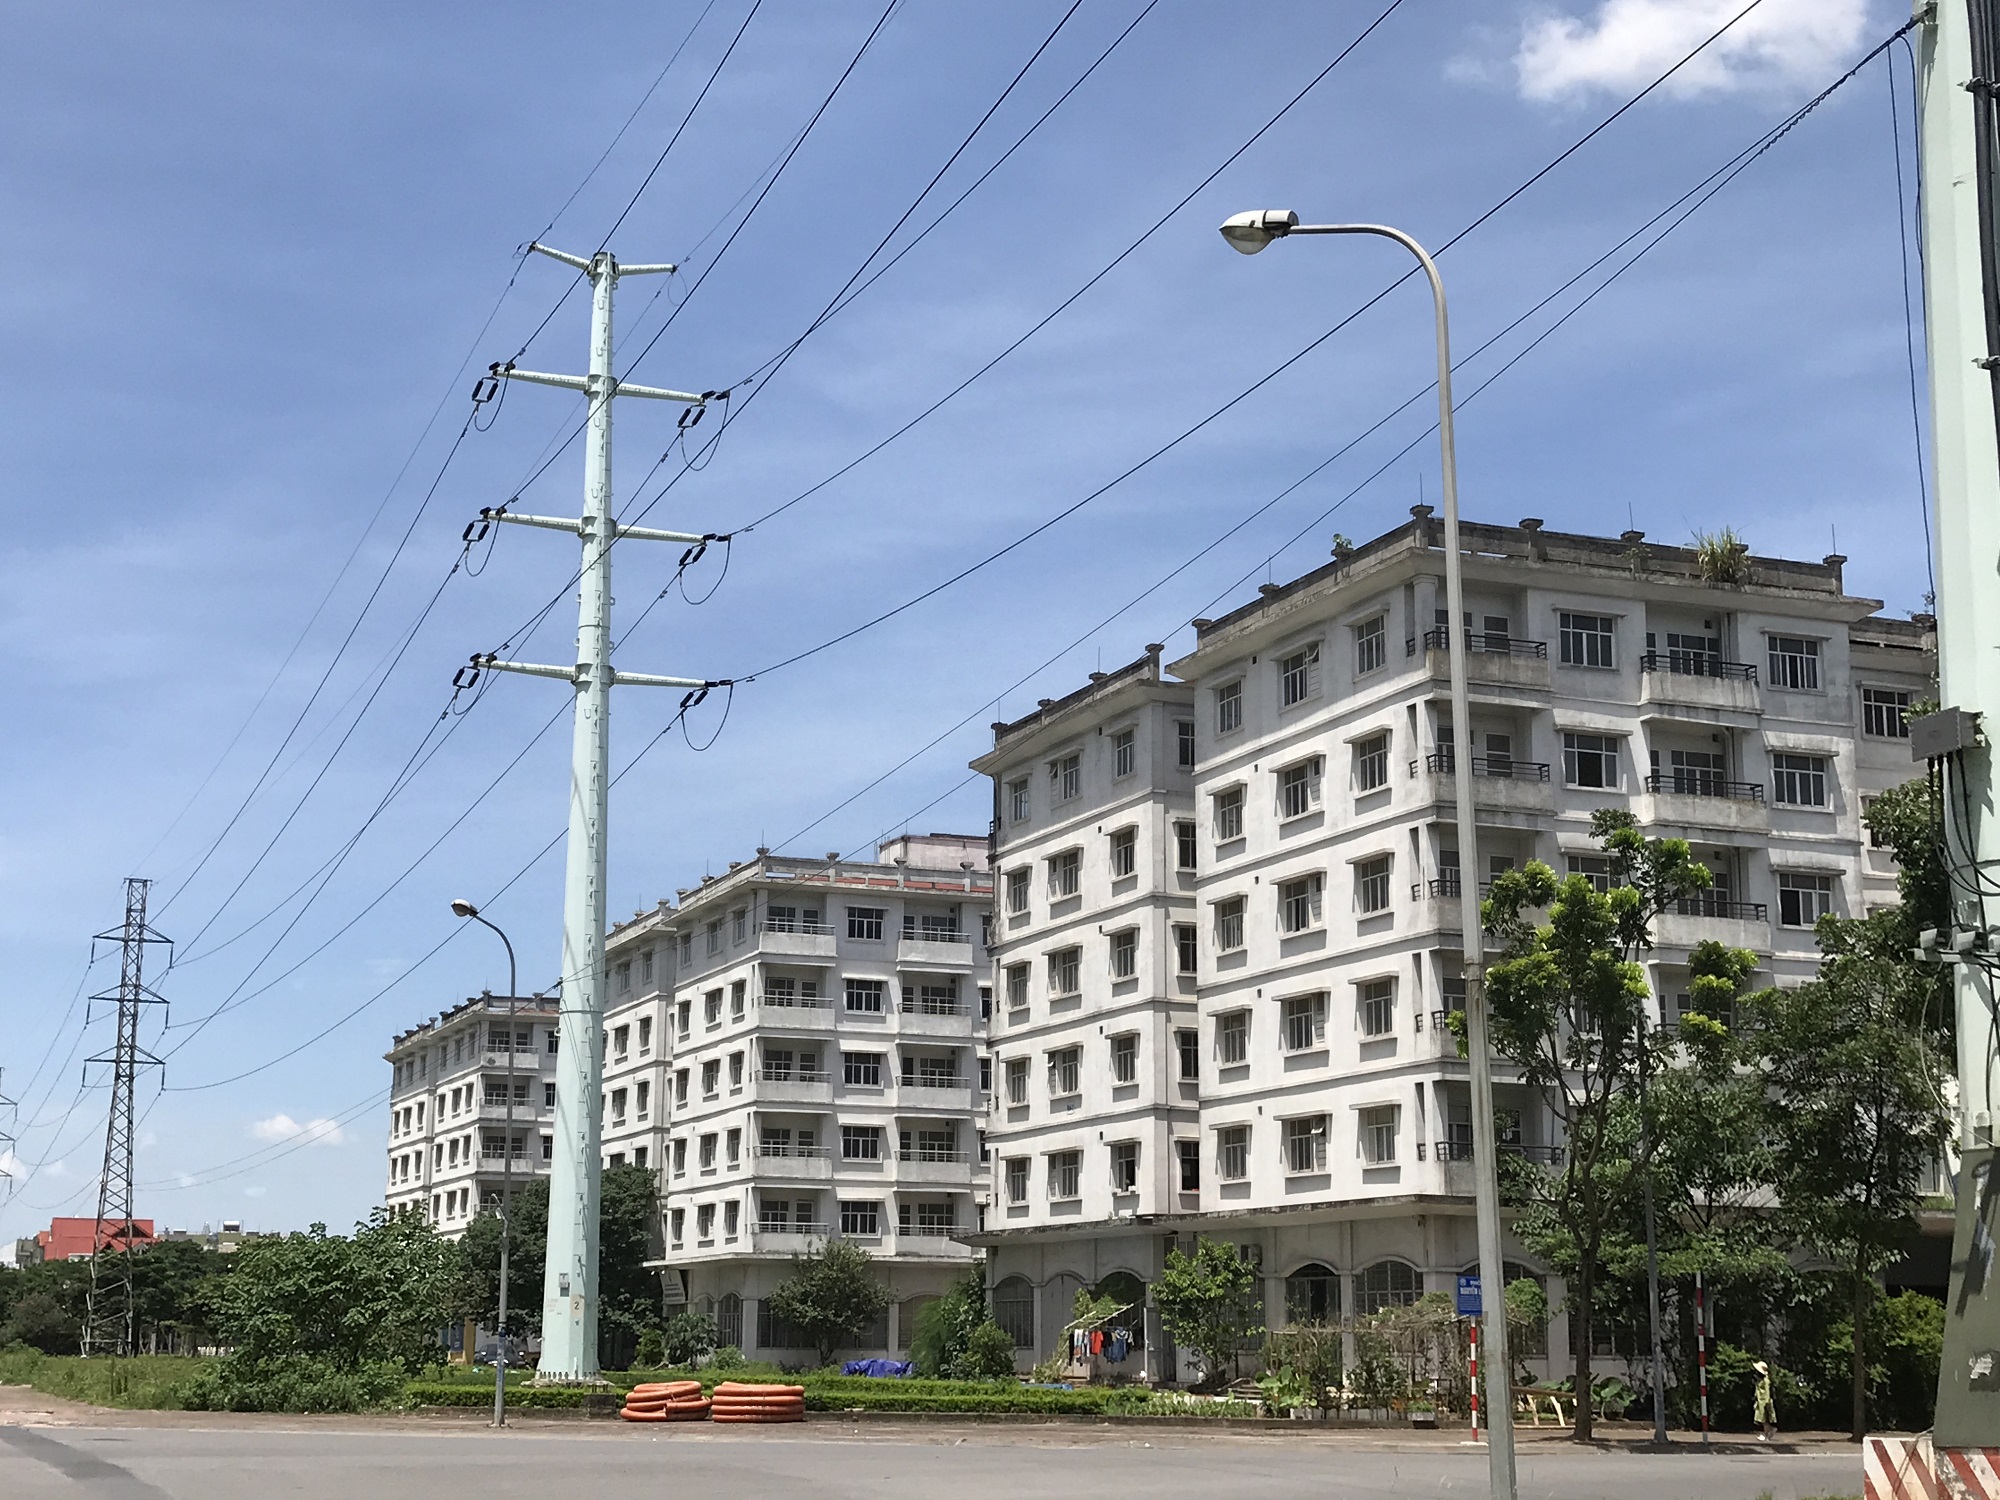 Ba tòa nhà tái định cư ở khu đô thị mới Sài Đồng hoàn thiện được 15 năm nhưng đến nay vẫn bỏ hoang (Ảnh: Thái Nguyễn)